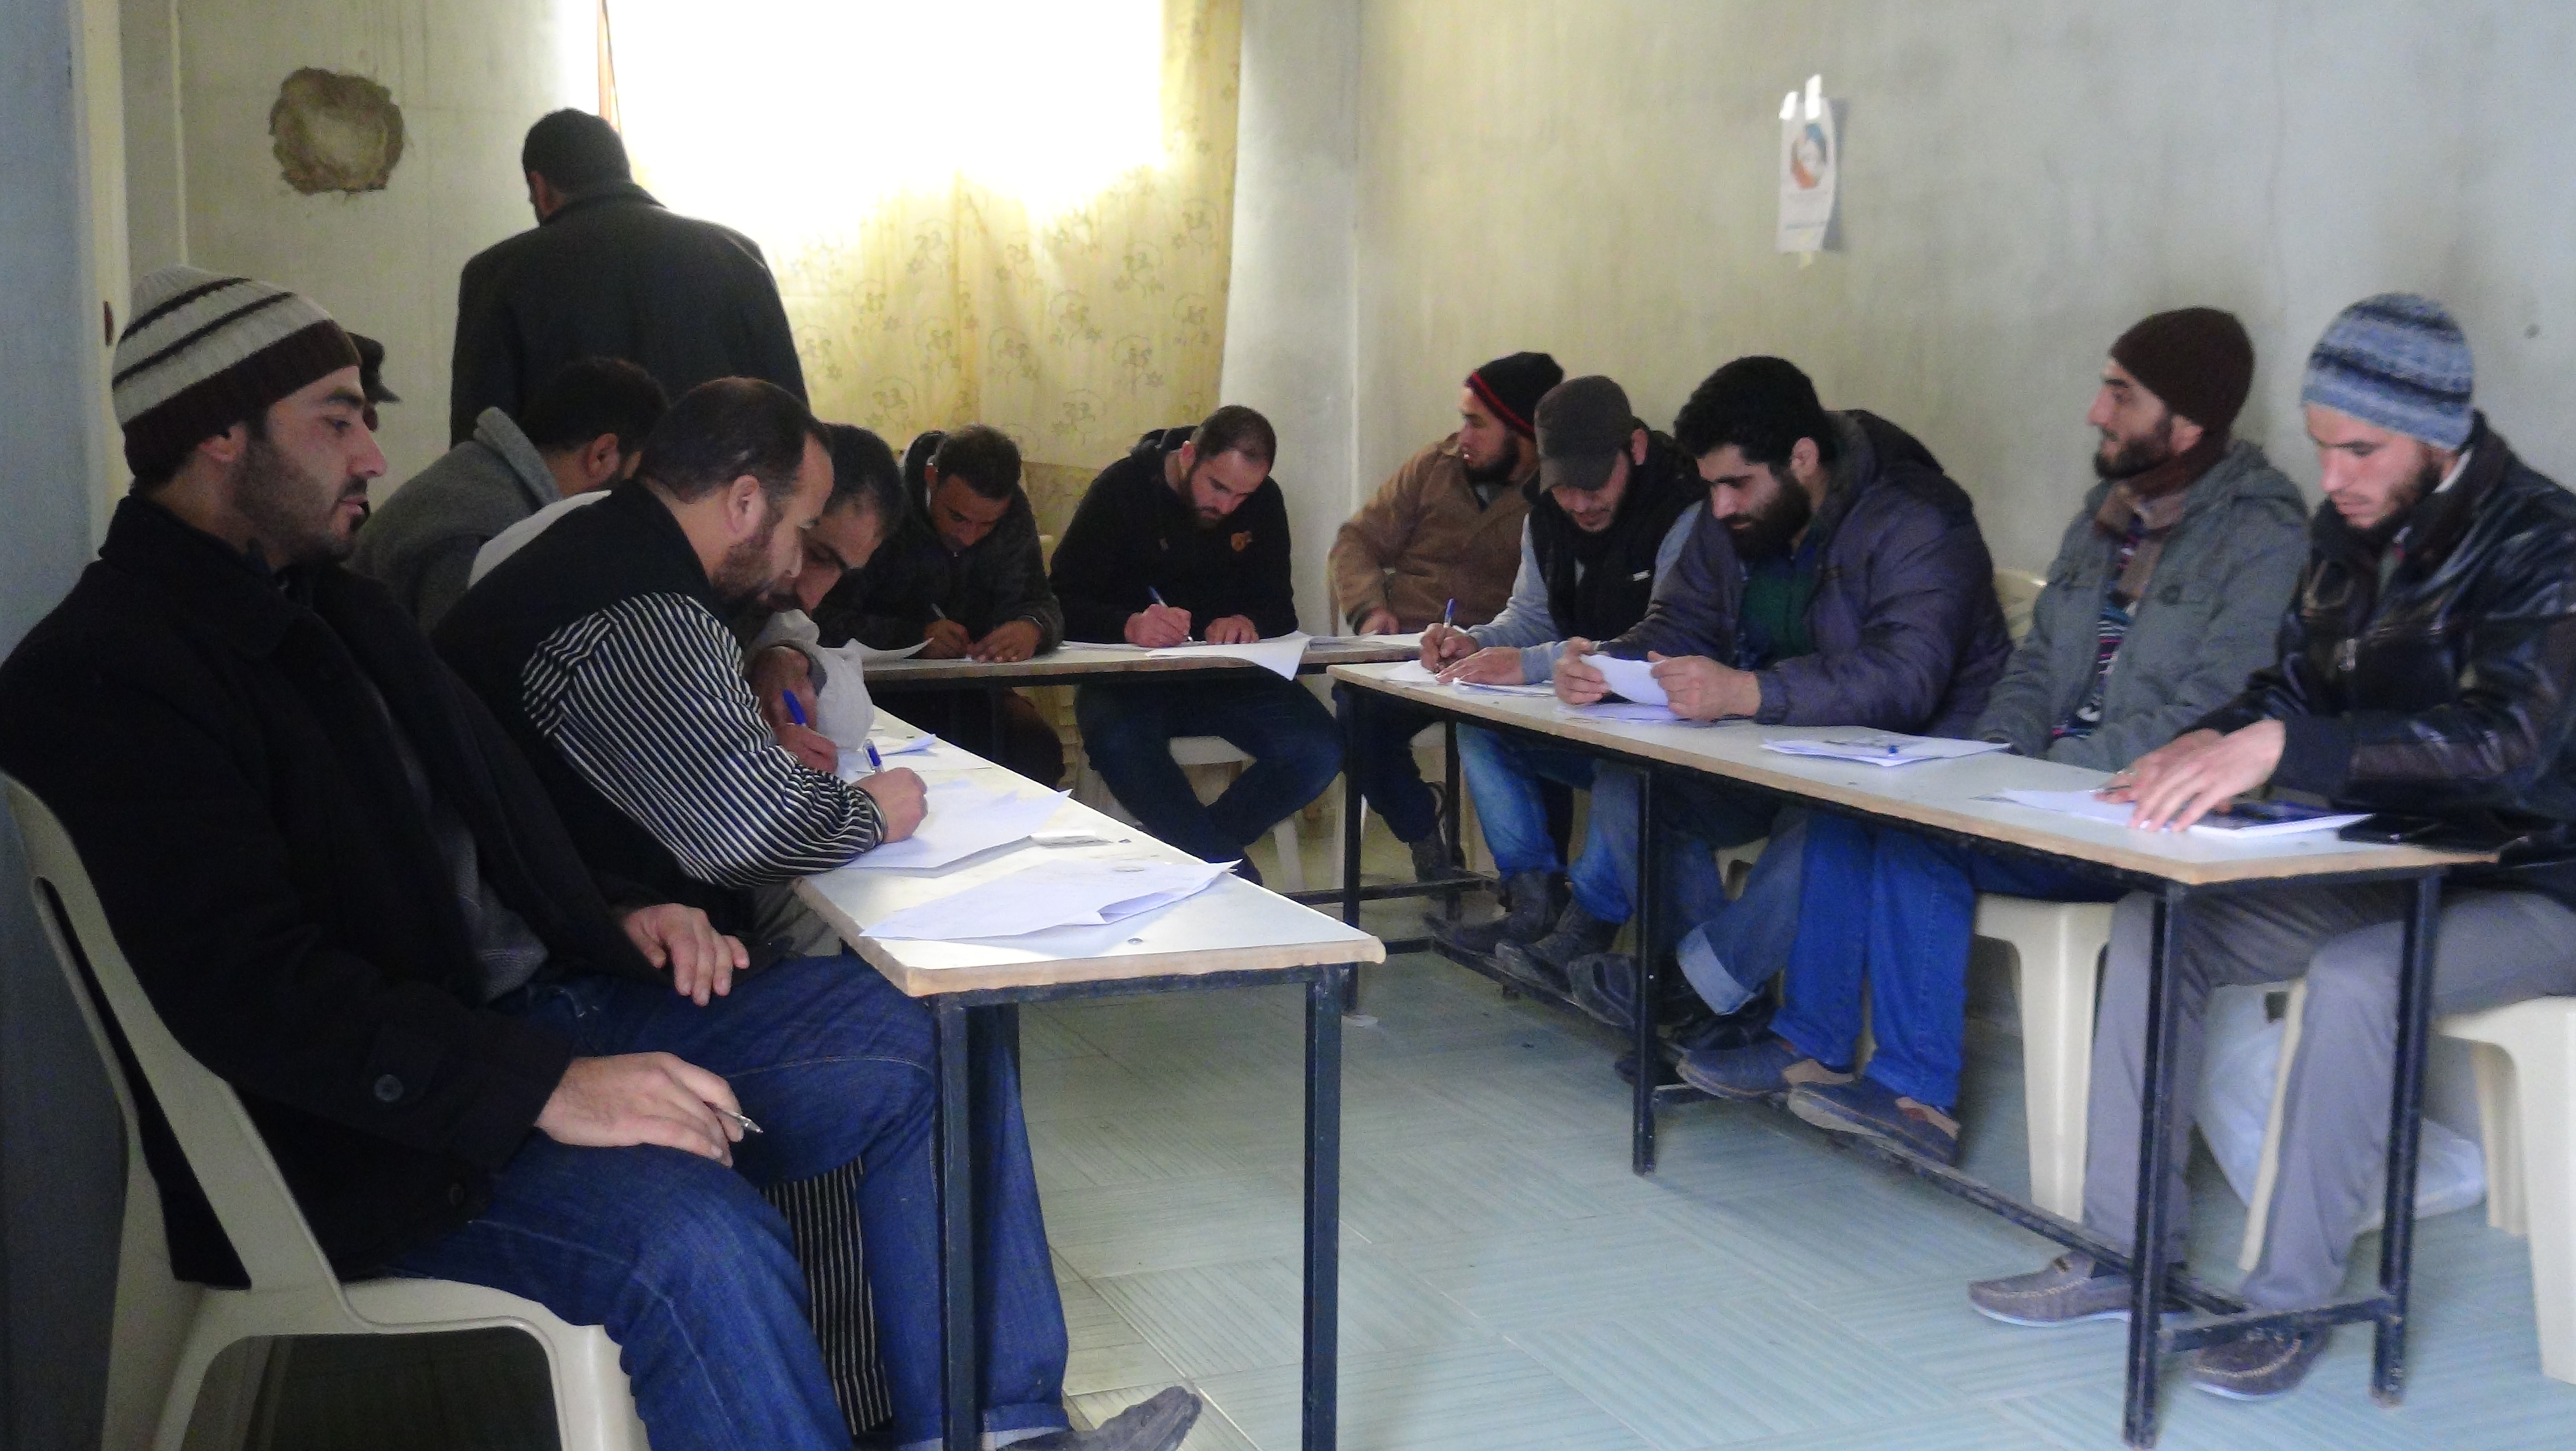 طلاب في ريف حمص المحاصر يجرون امتحانات عن بعد في جامعة 